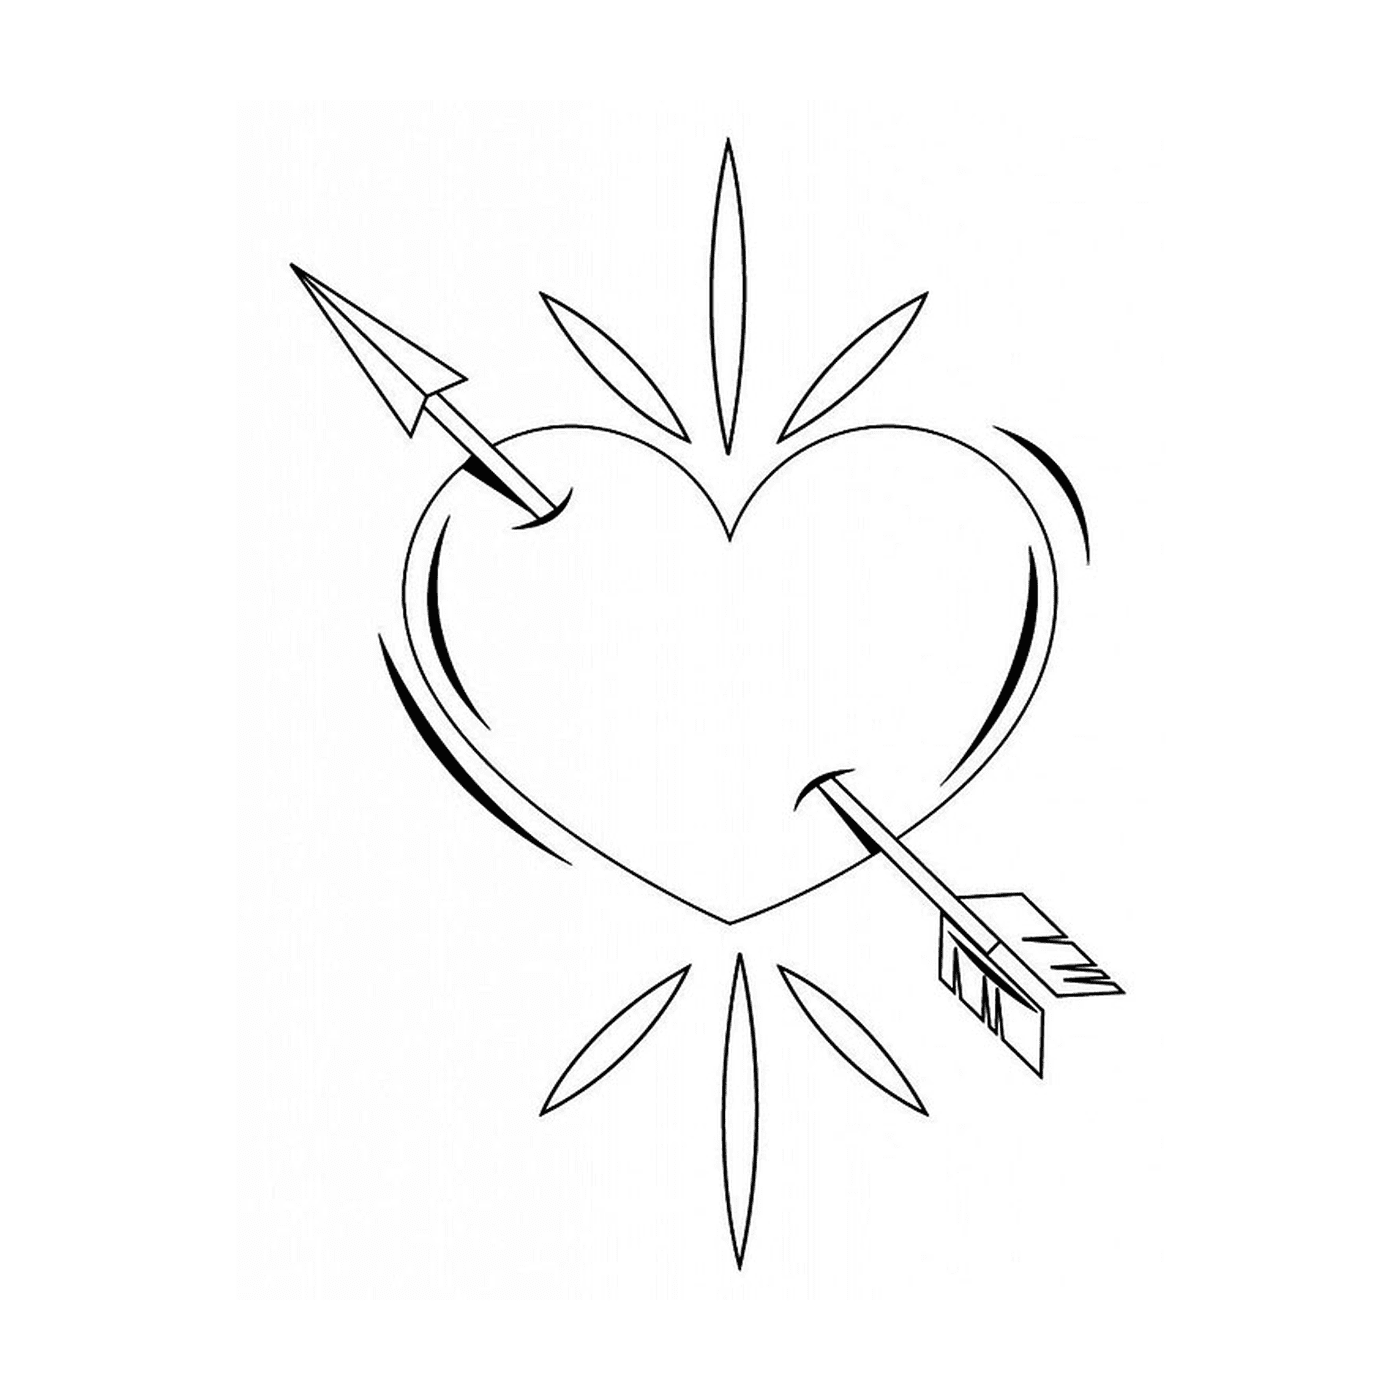  Un corazón perforado por una flecha dibujada en tinta negra 